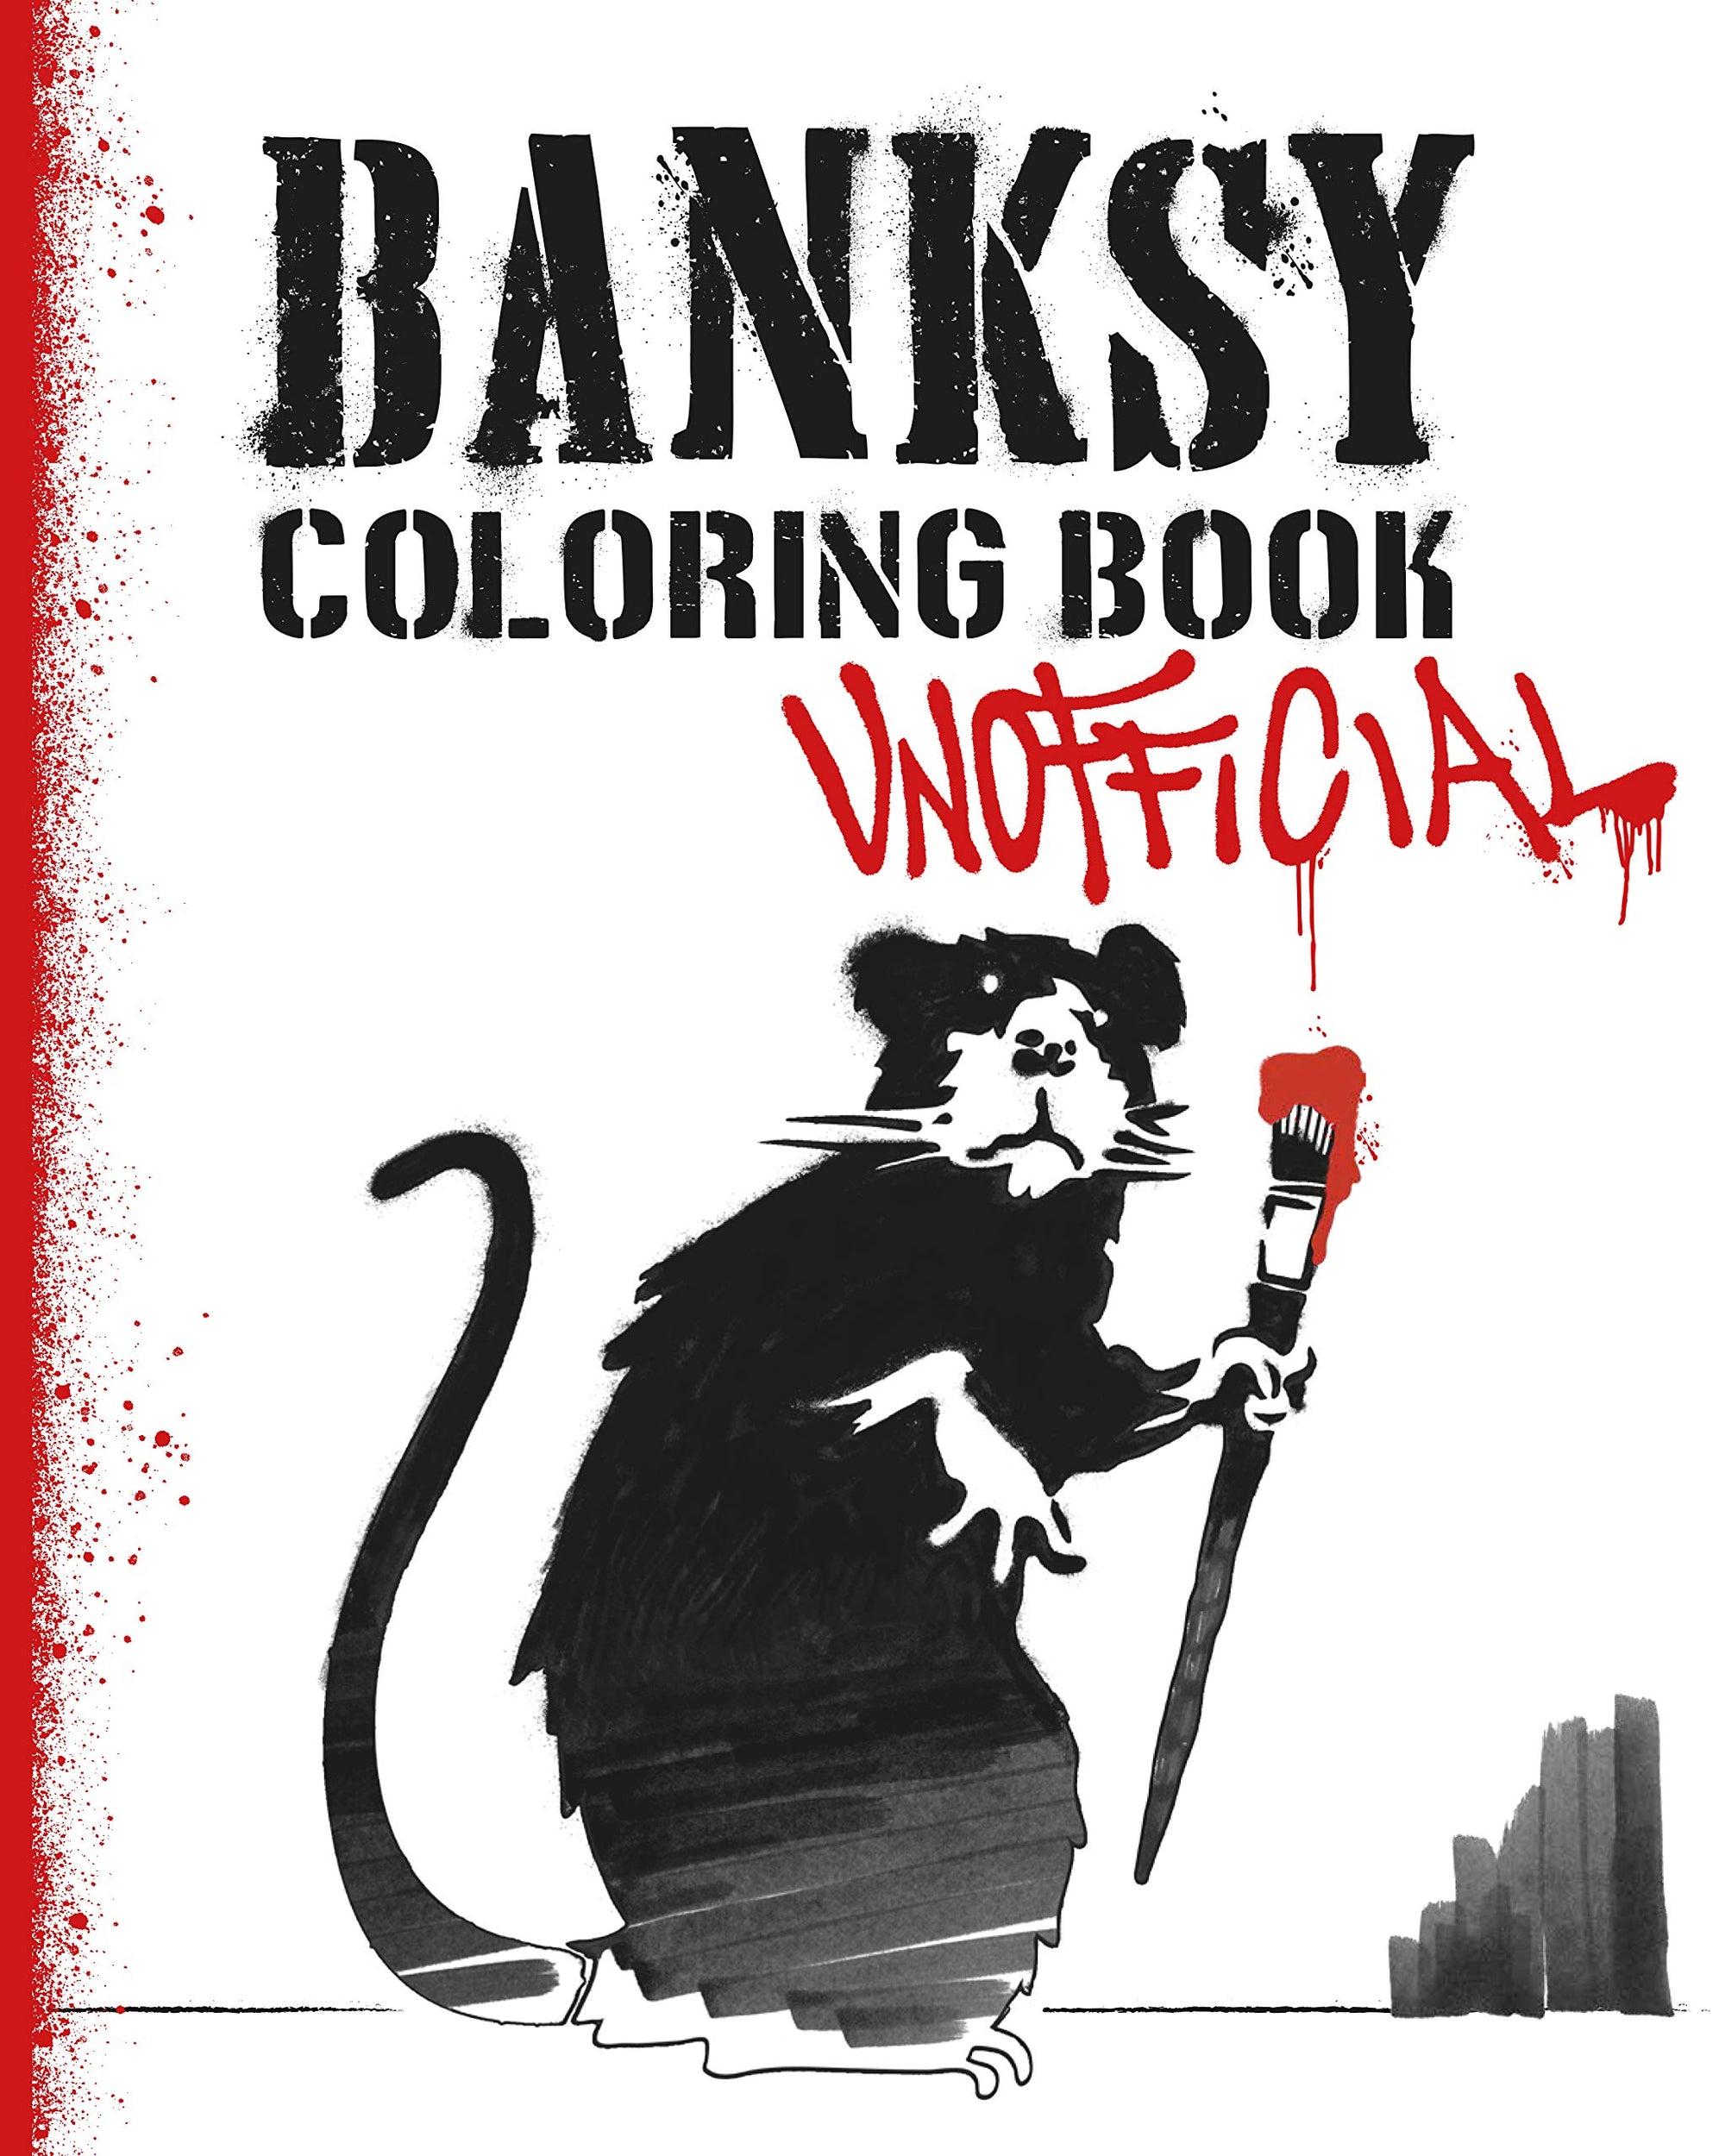 Banksy Coloring Book - Unofficial